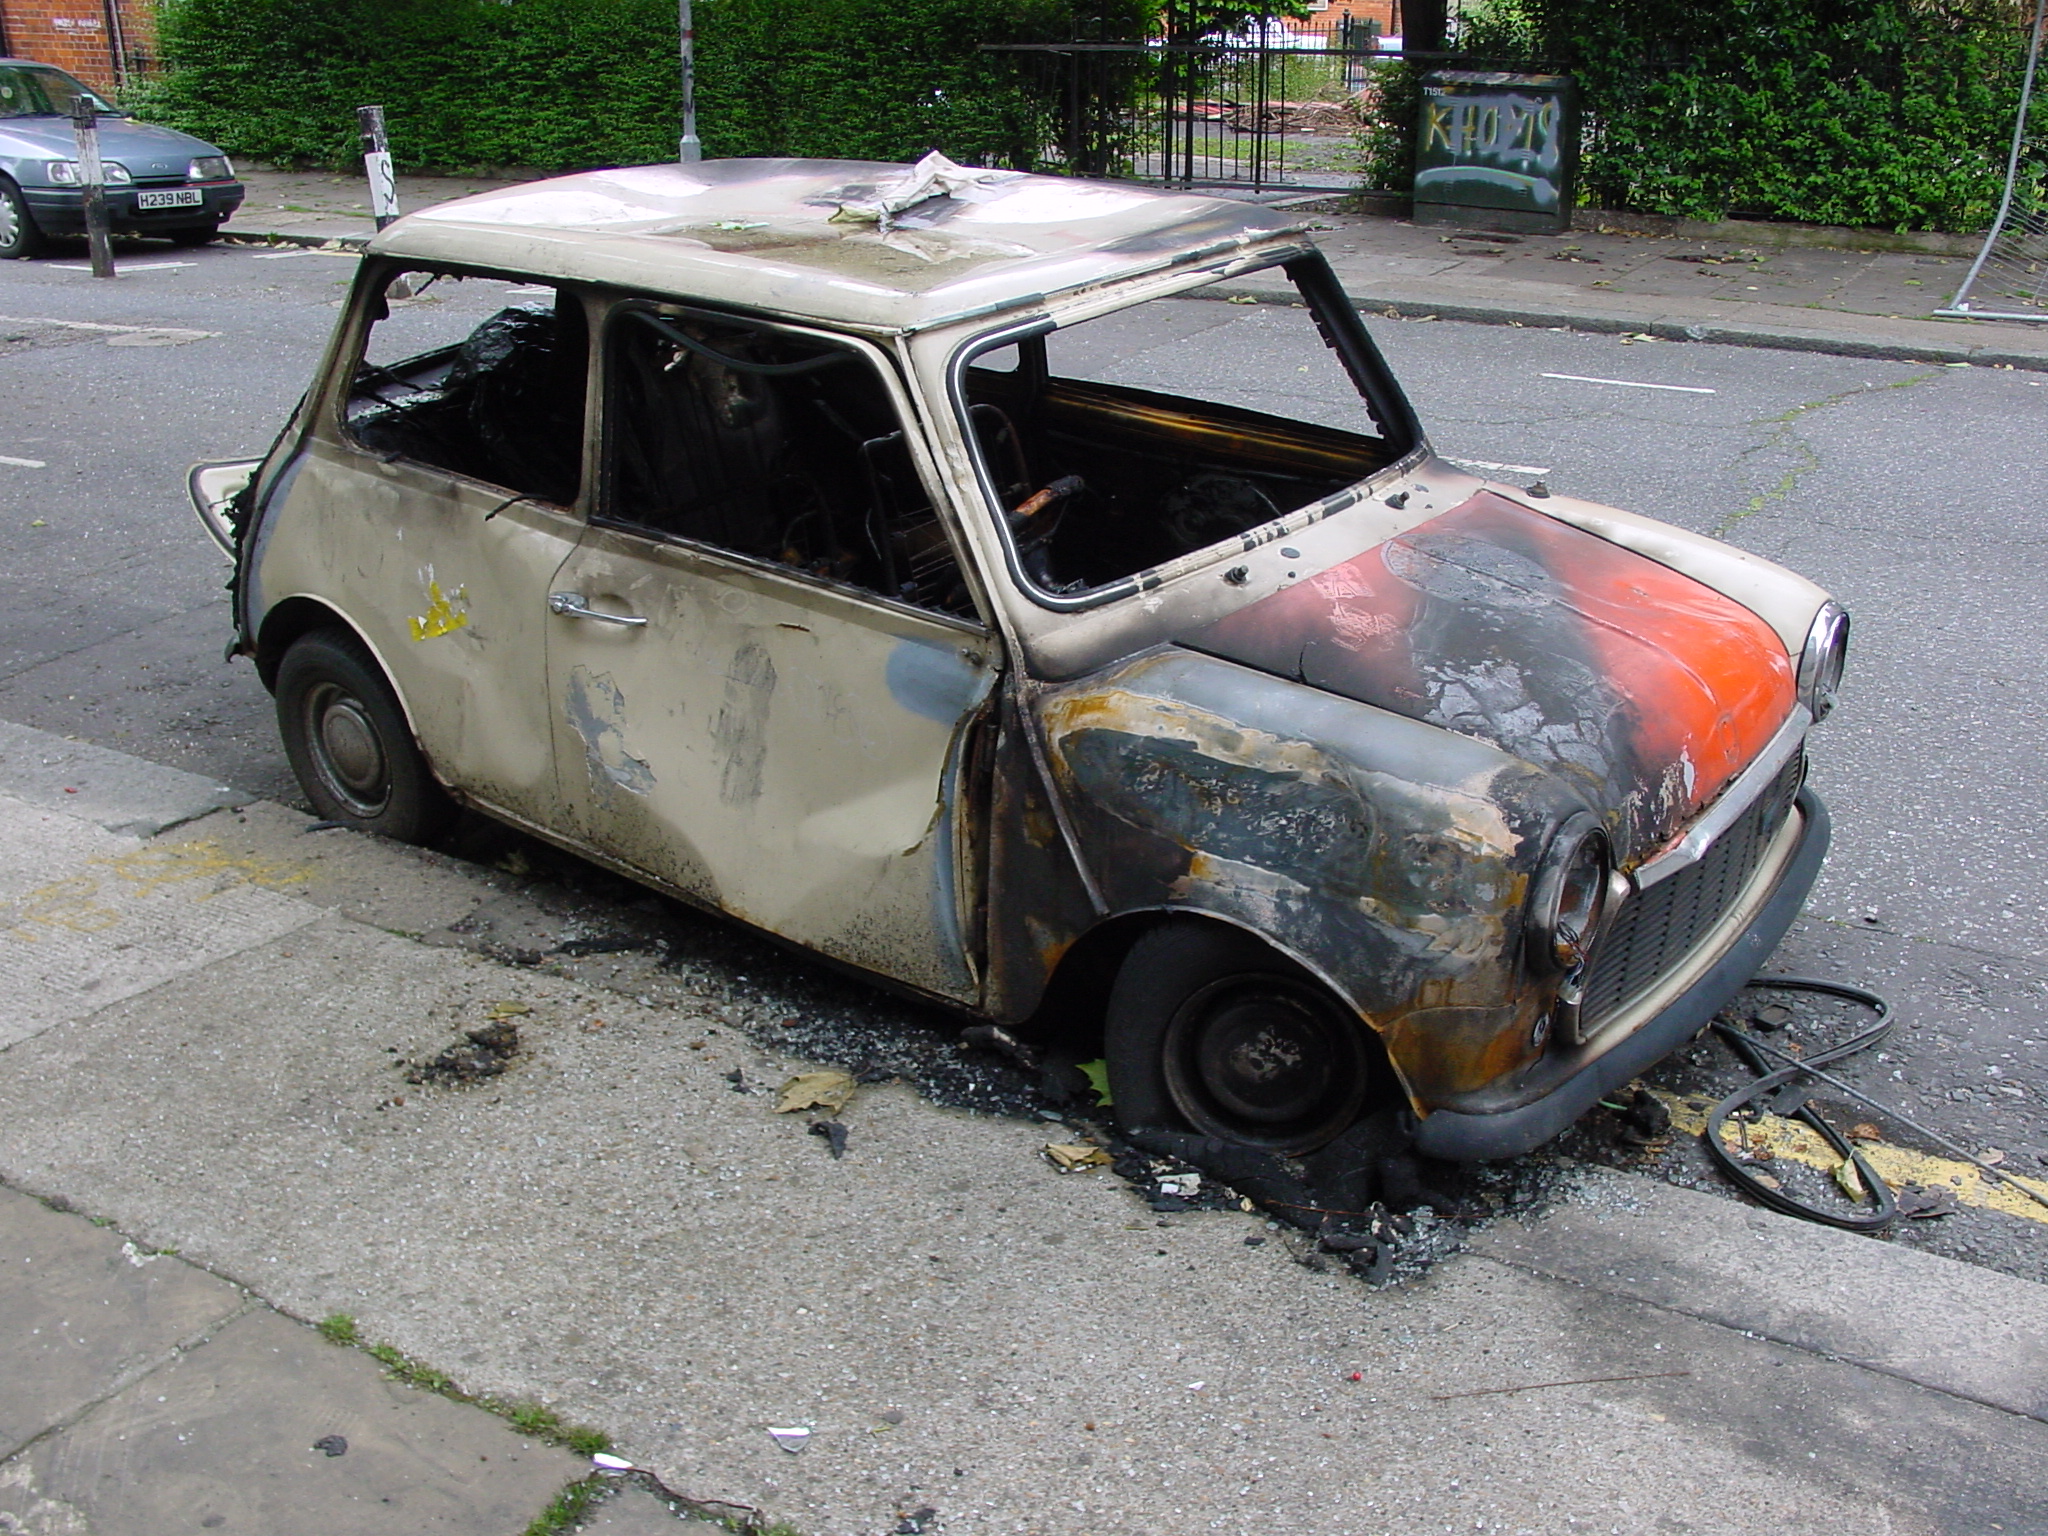 Burnt out car, Rochelle Street, 17 Jun 2001